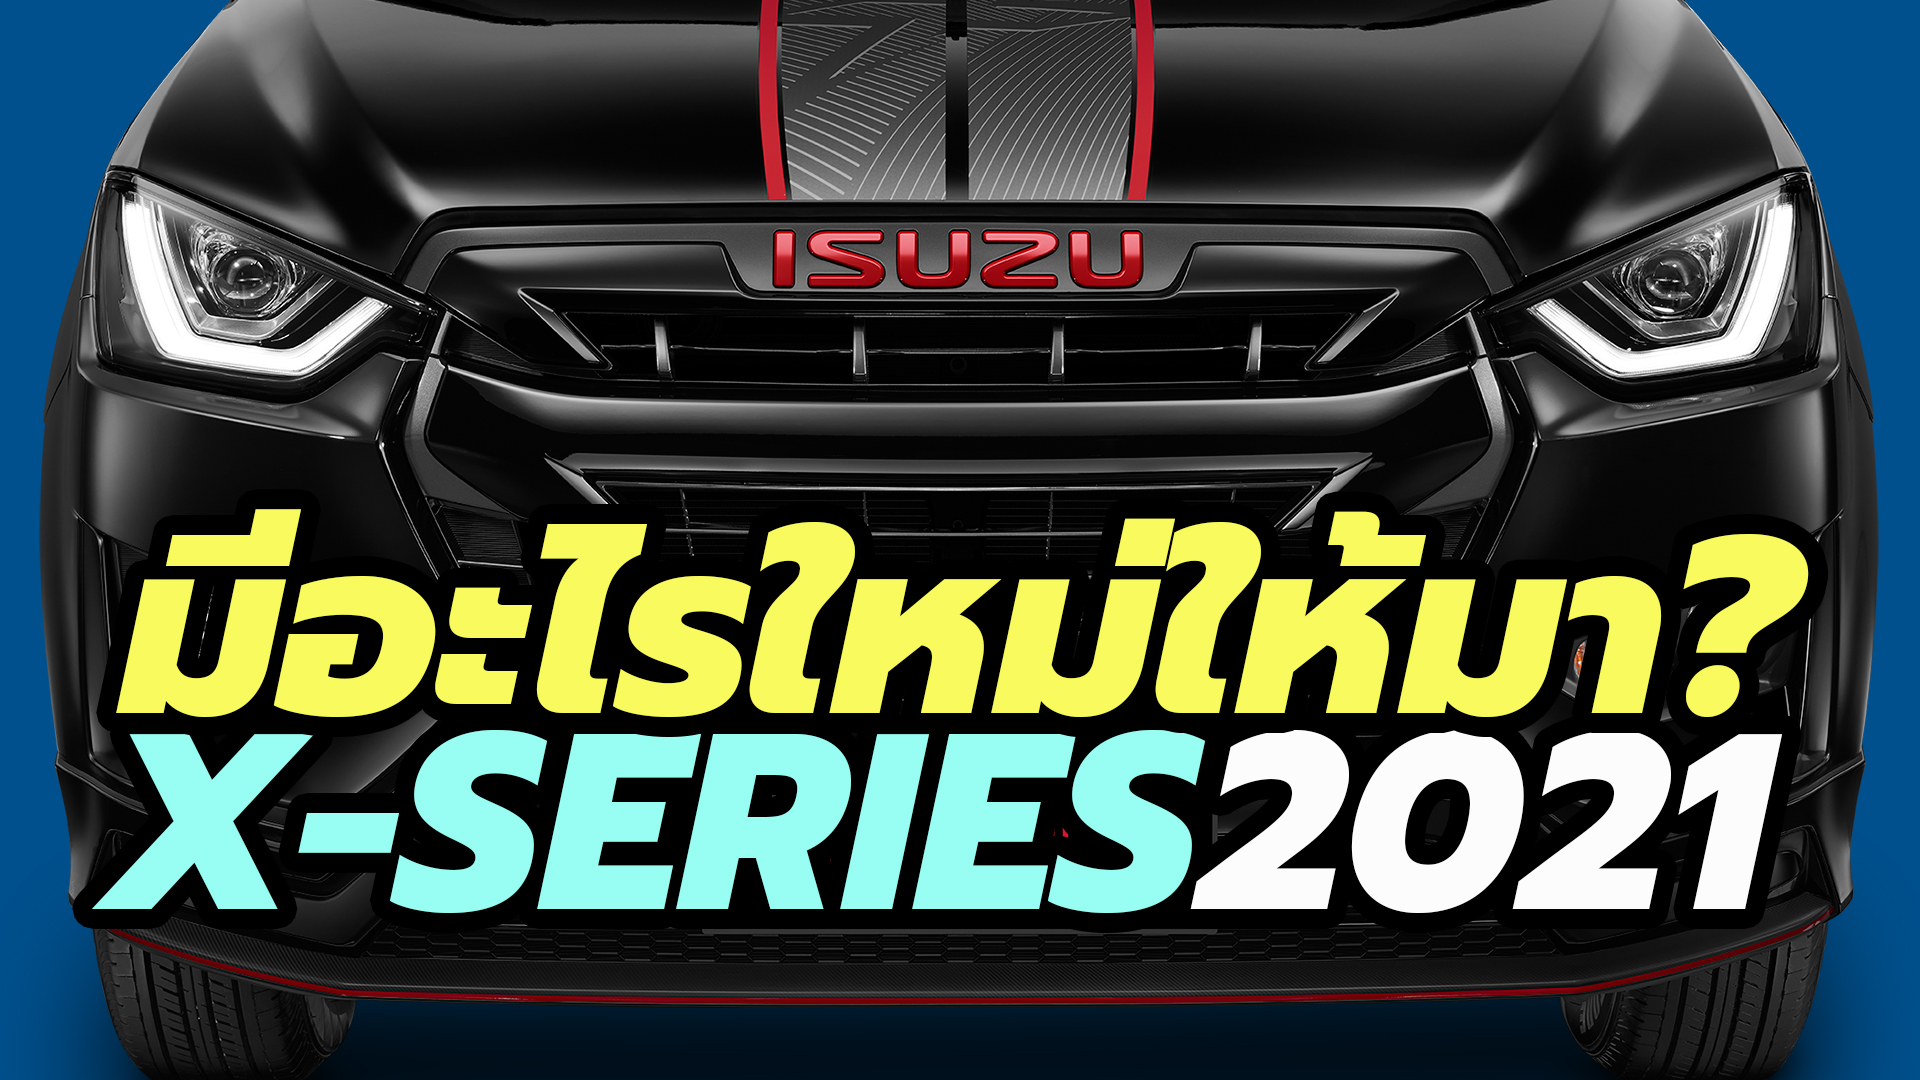 2021 Isuzu D-MAX X-Series Speed